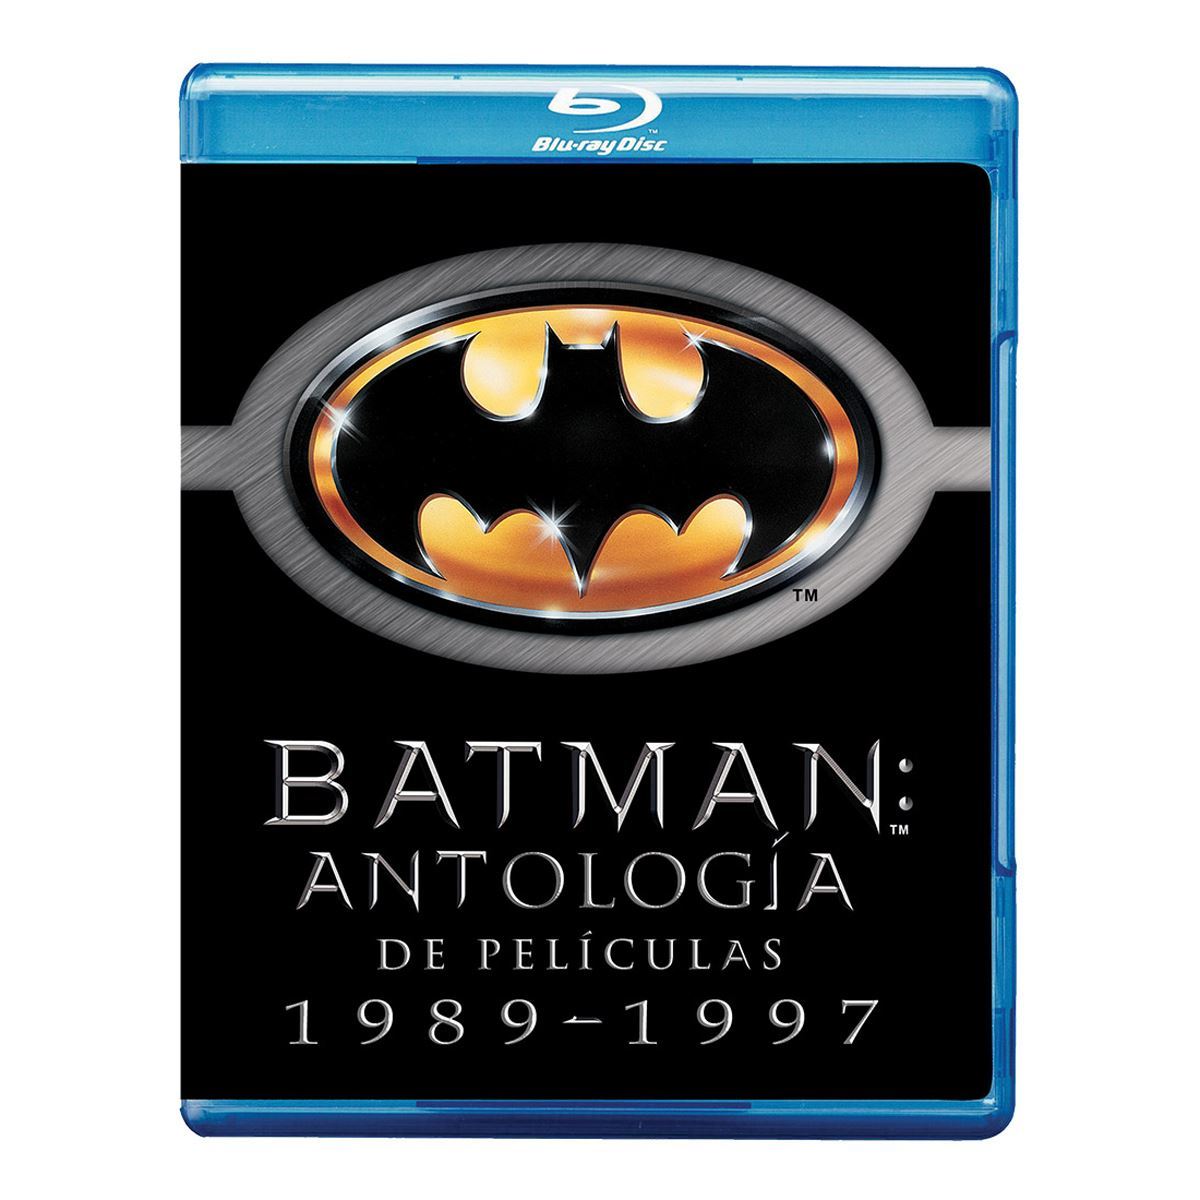 Paquete Batman Antologia 1989-1997